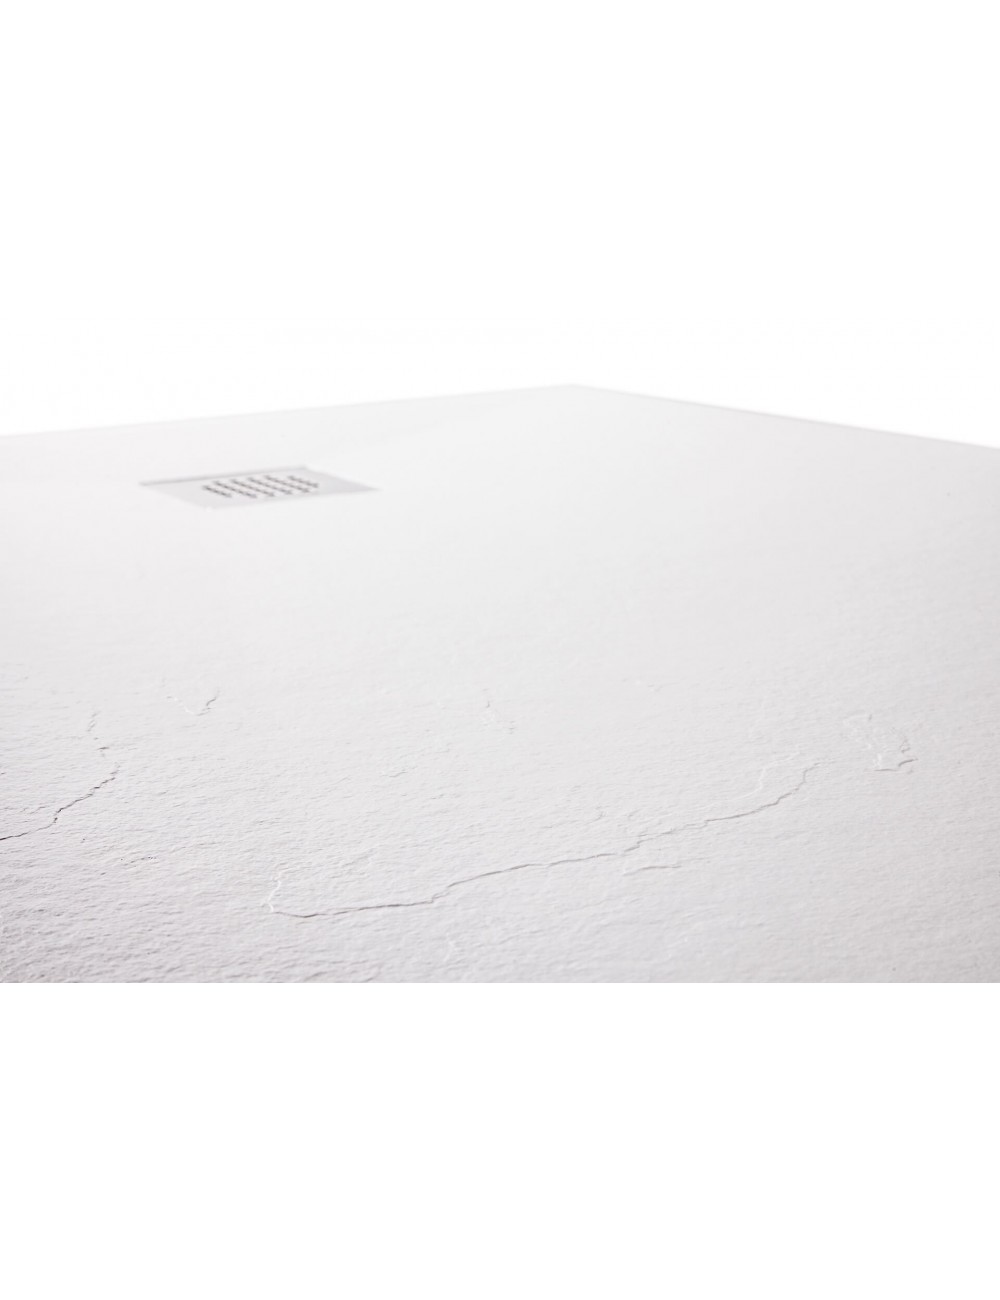 Piatto doccia effetto pietra in Restone bianco H2,5 80x100